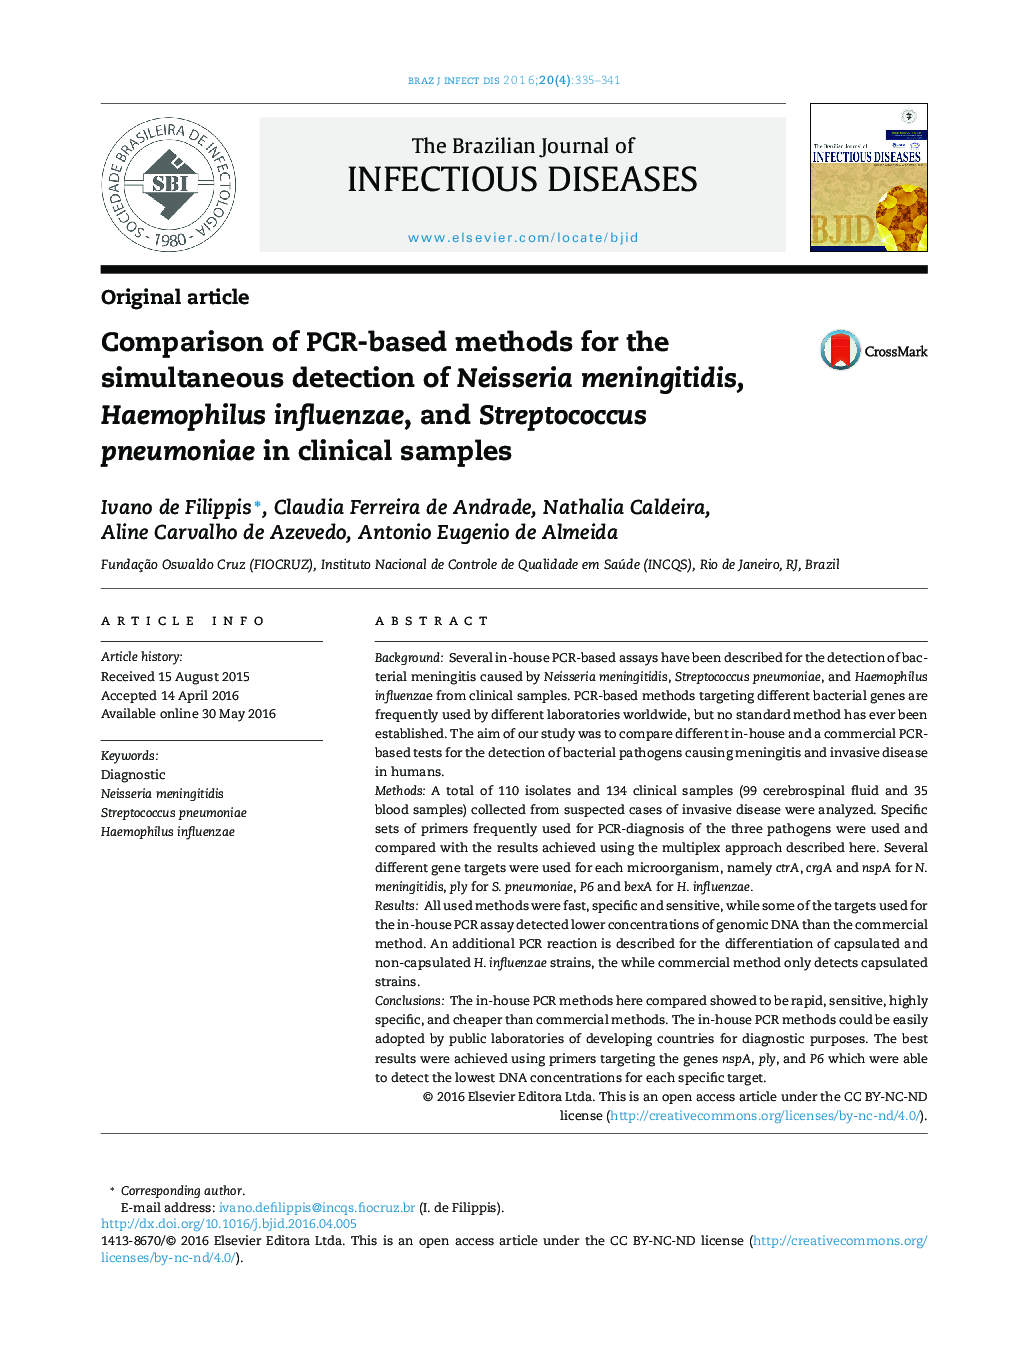 Comparison of PCR-based methods for the simultaneous detection of Neisseria meningitidis, Haemophilus influenzae, and Streptococcus pneumoniae in clinical samples